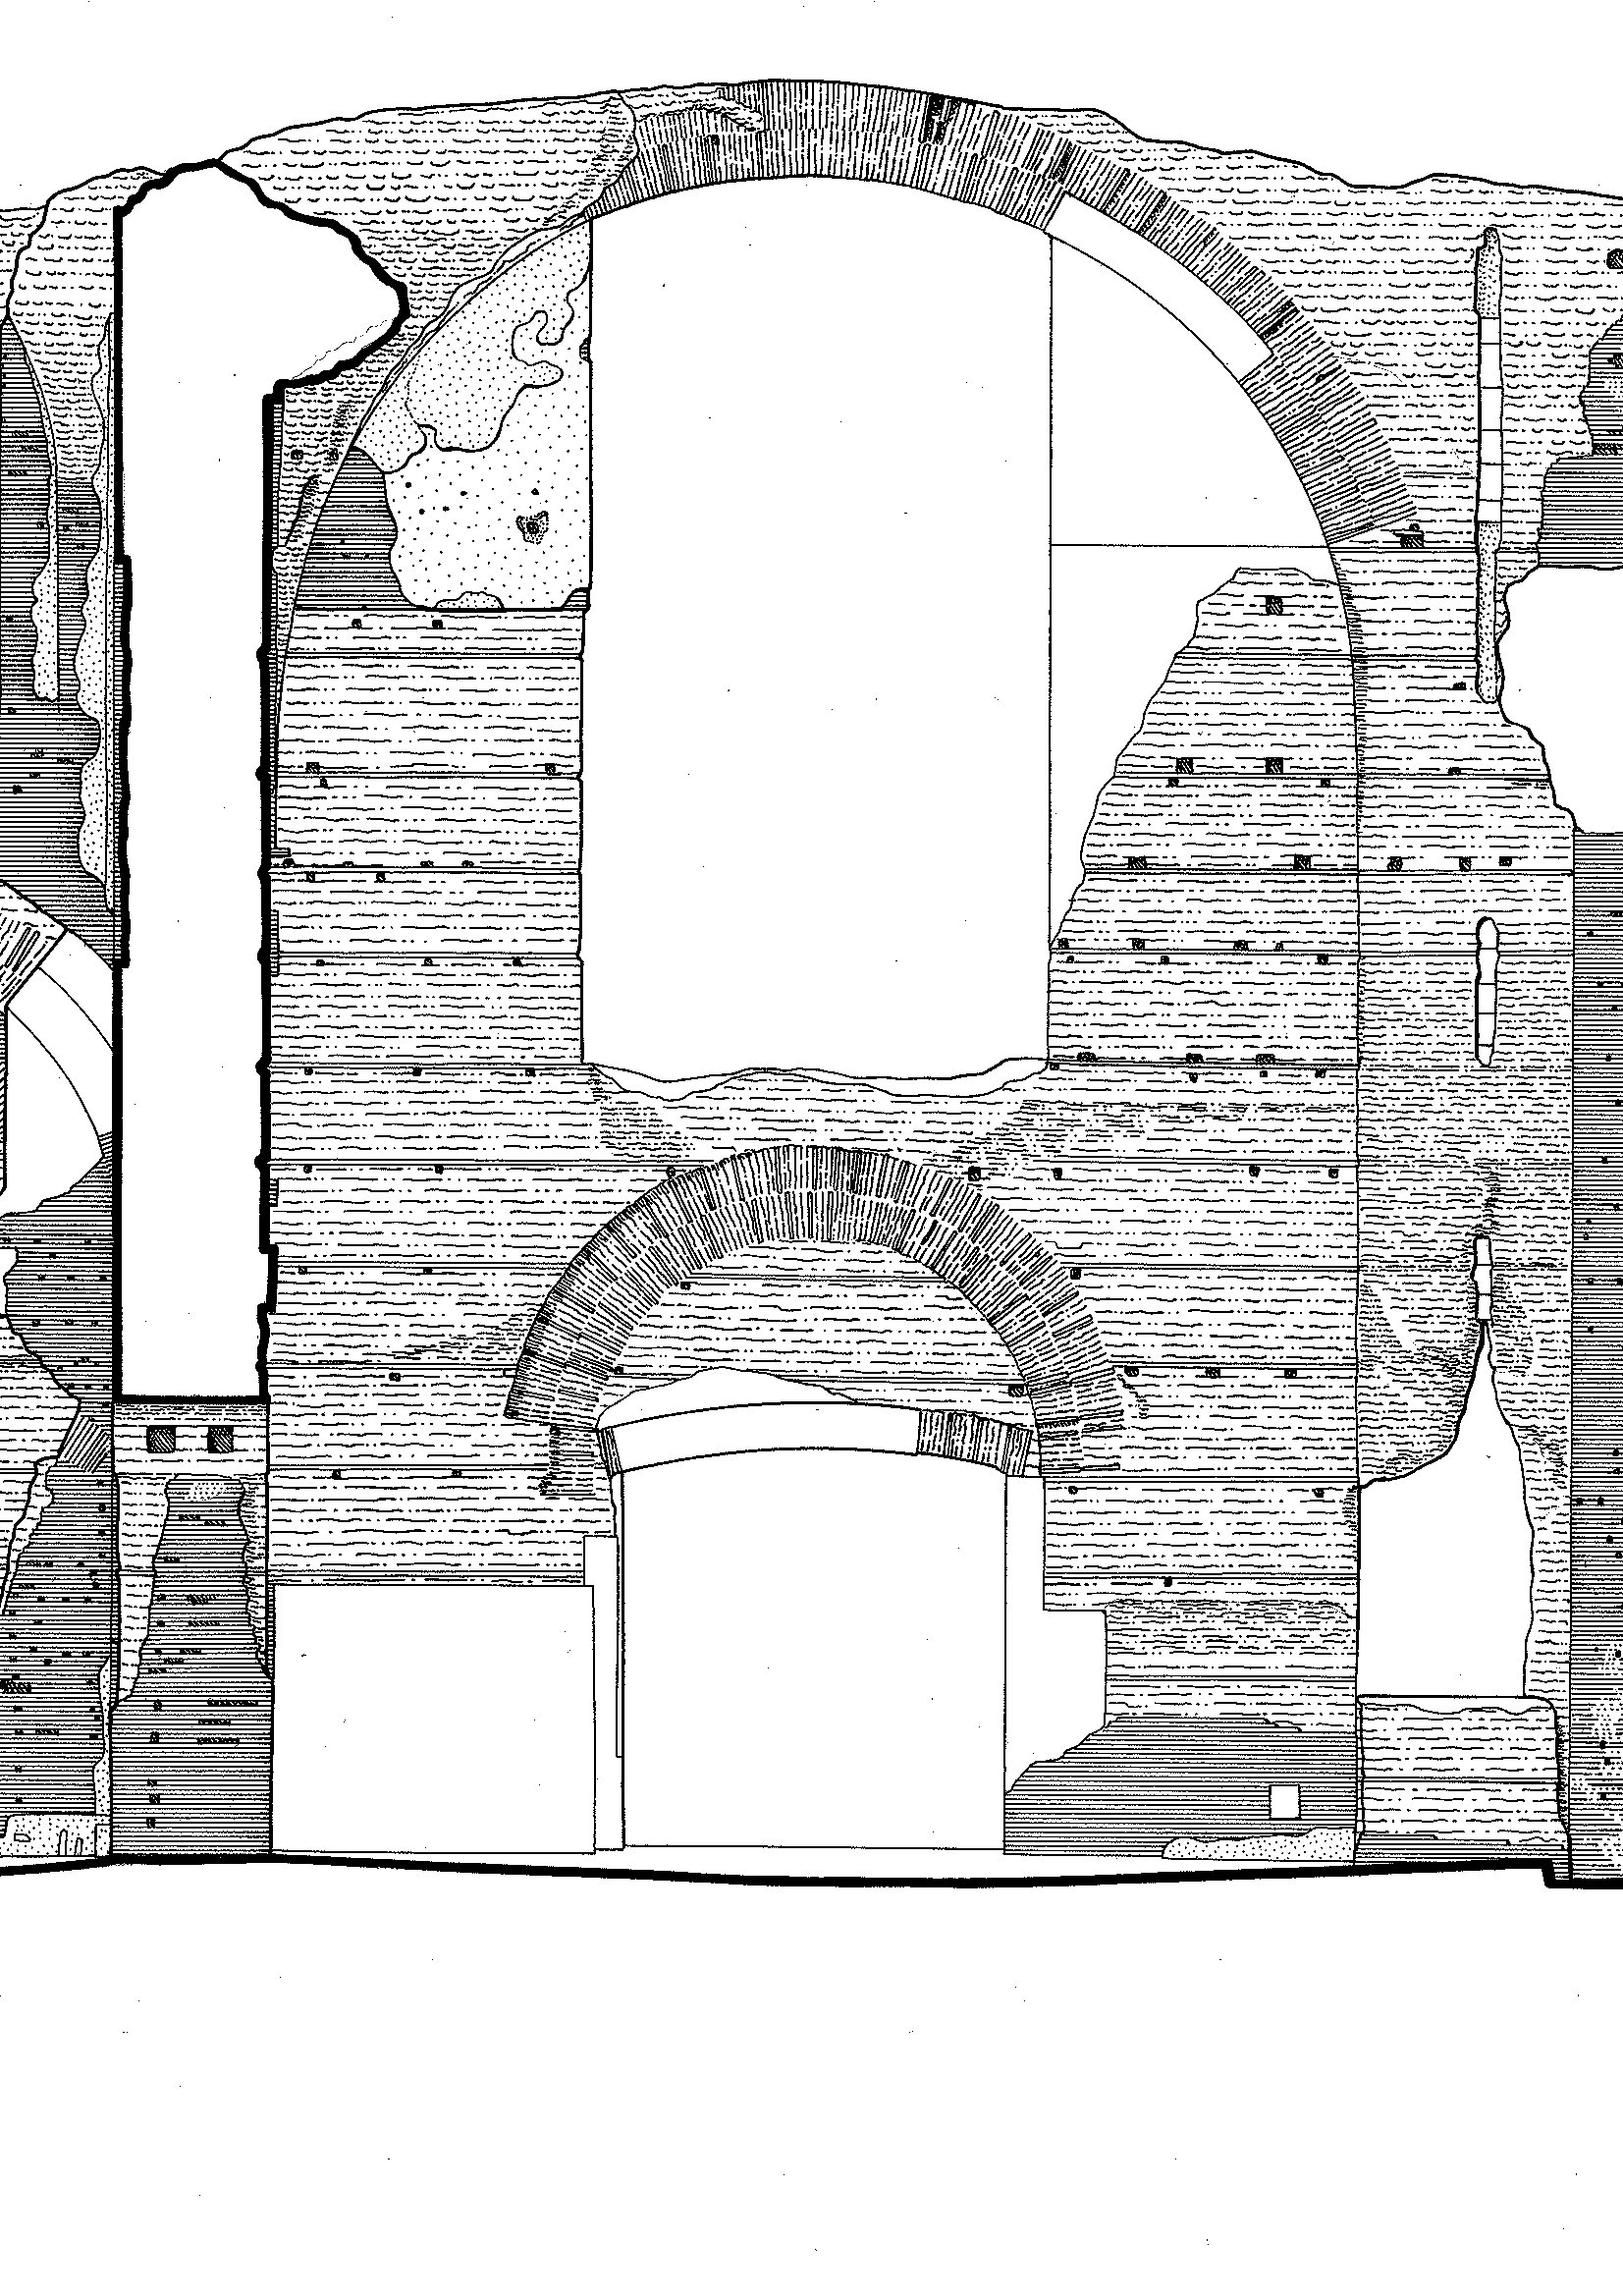 Terme di Caracalla sezione prospetto 1:200 – dettaglio